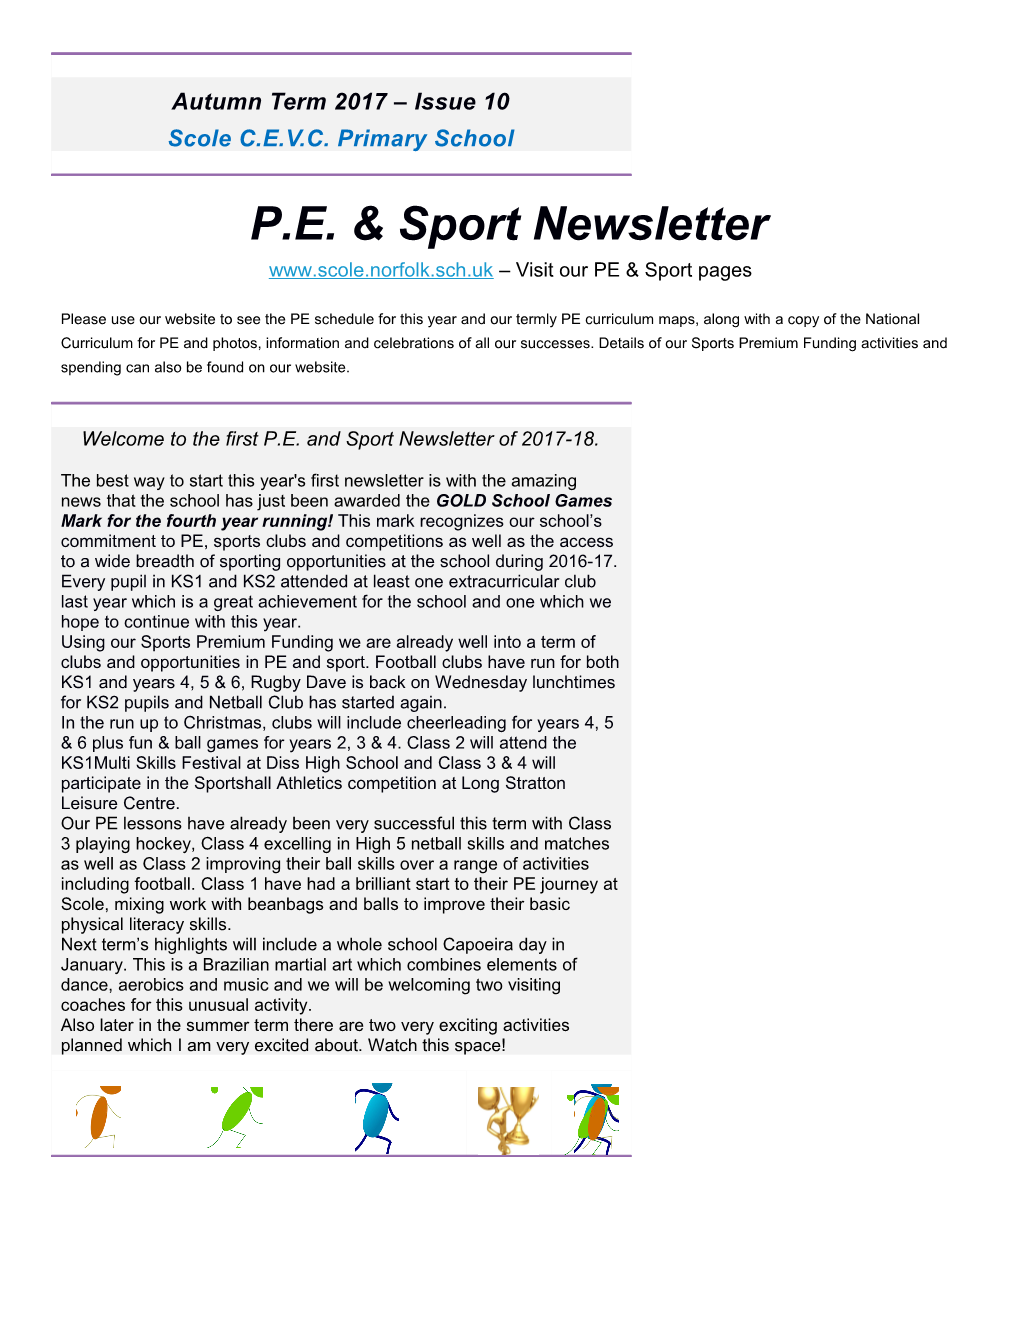 Visitour PE & Sport Pages